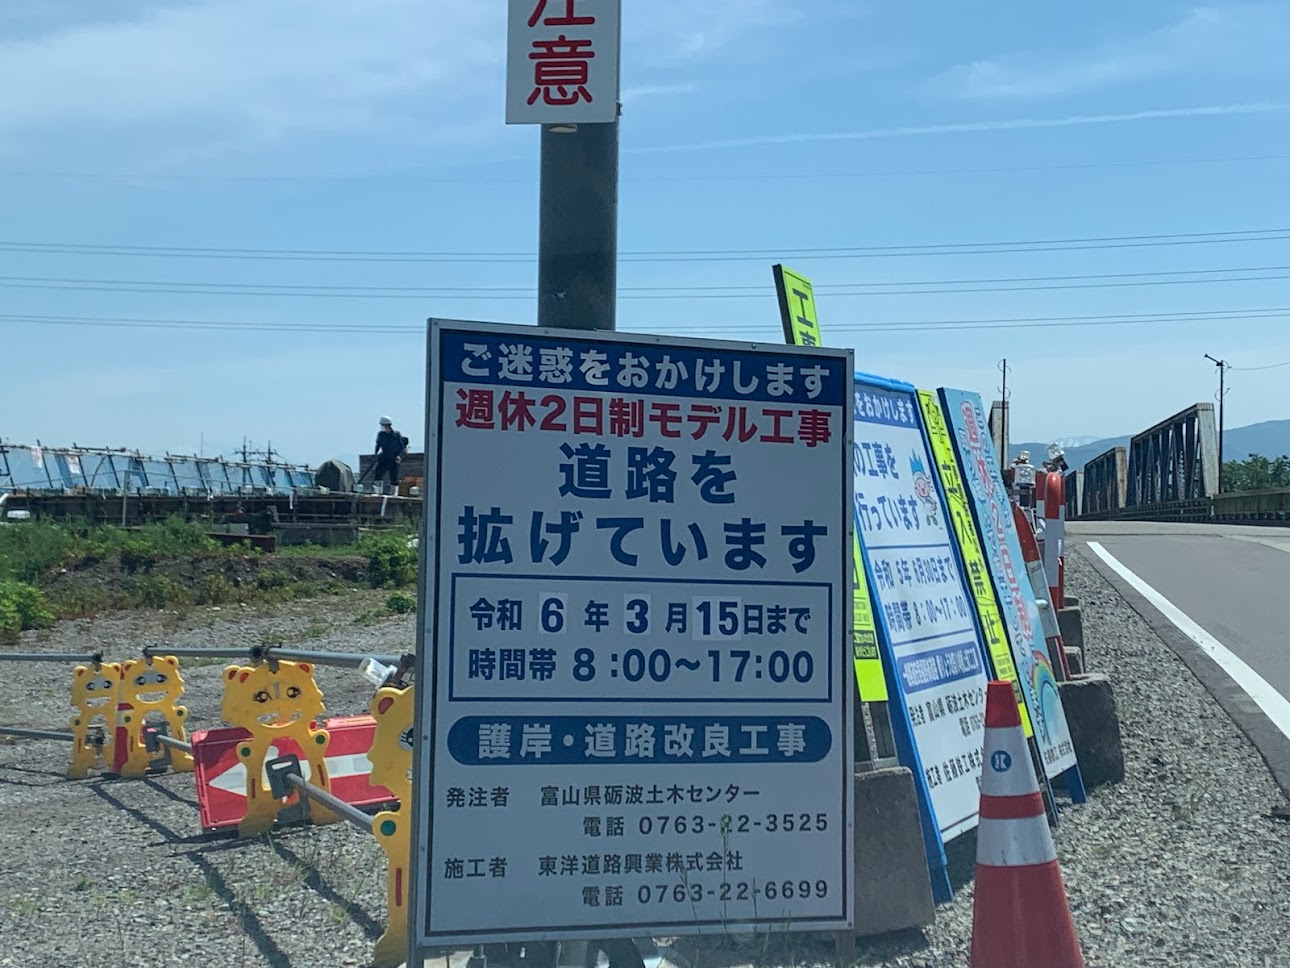 川崎橋の完成は令和6年3月15日